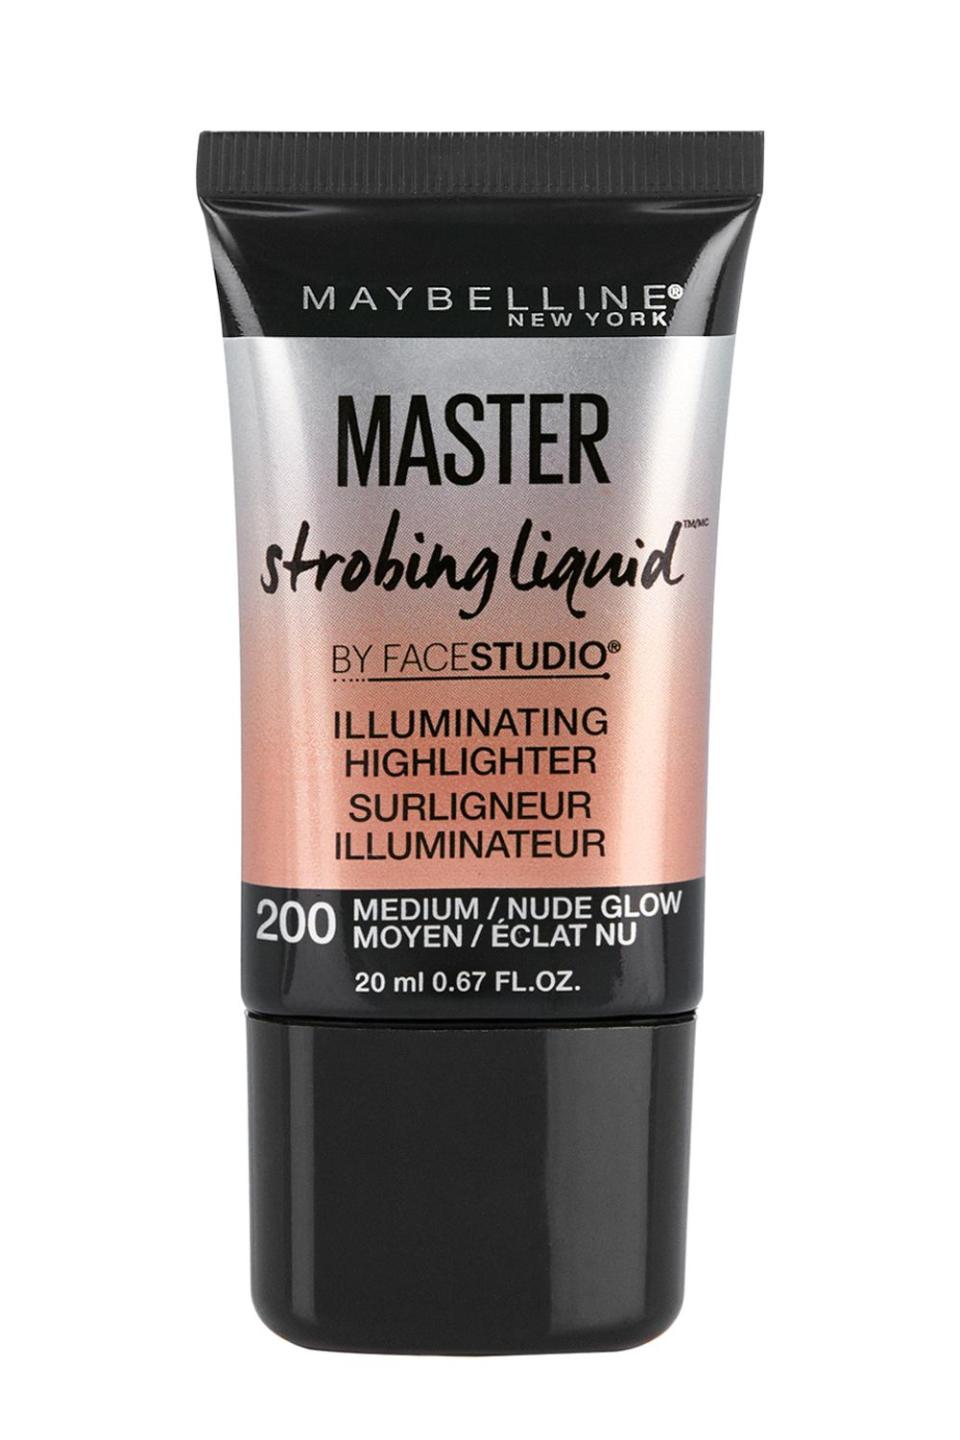 6) Maybelline New York Master Strobing Liquid Illuminating Highlighter